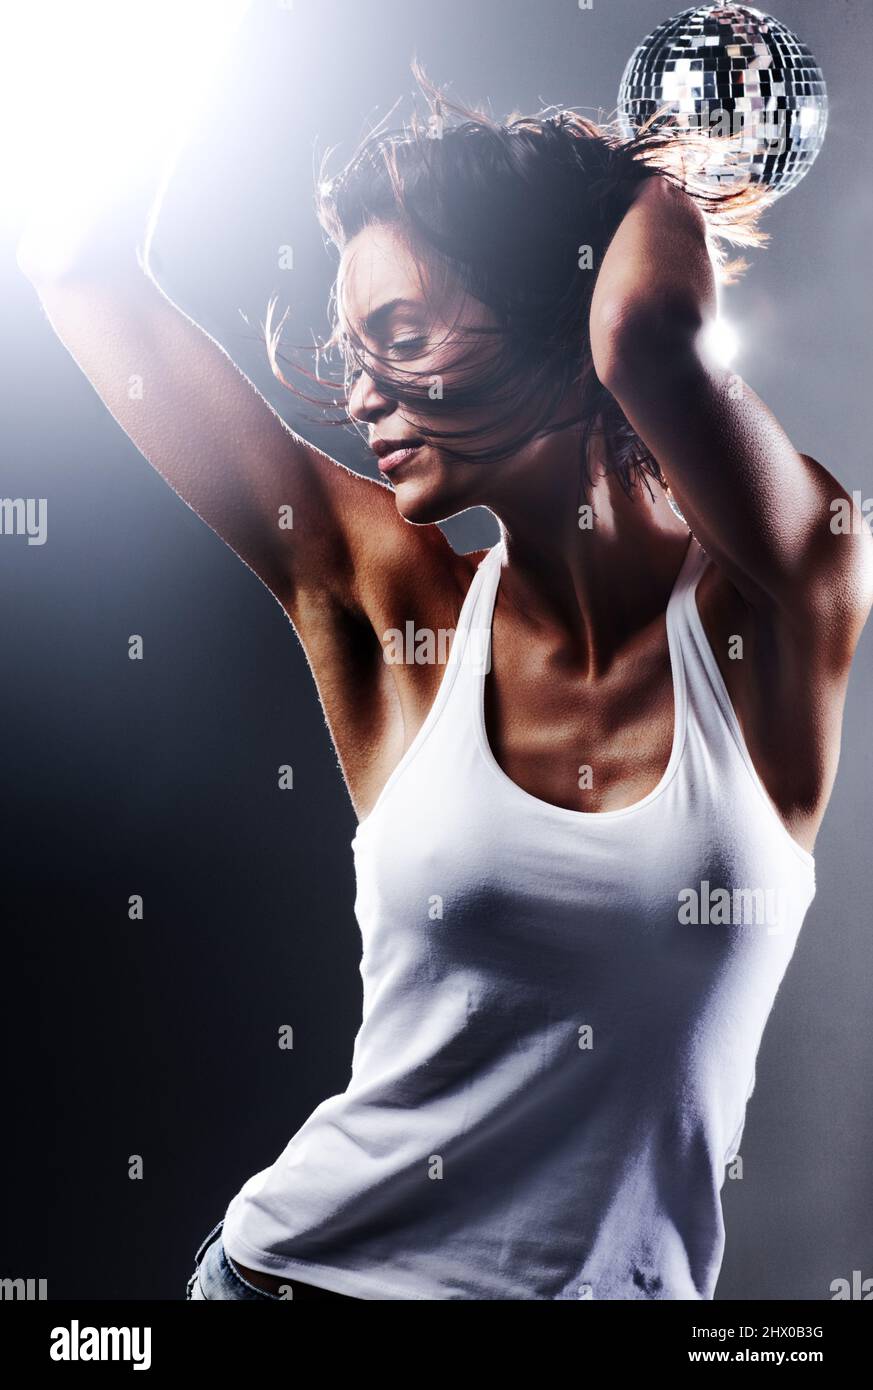 Ceneri una ballerina da discoteca. Scatto corto di una giovane donna  attraente ballando con la libertà totale Foto stock - Alamy